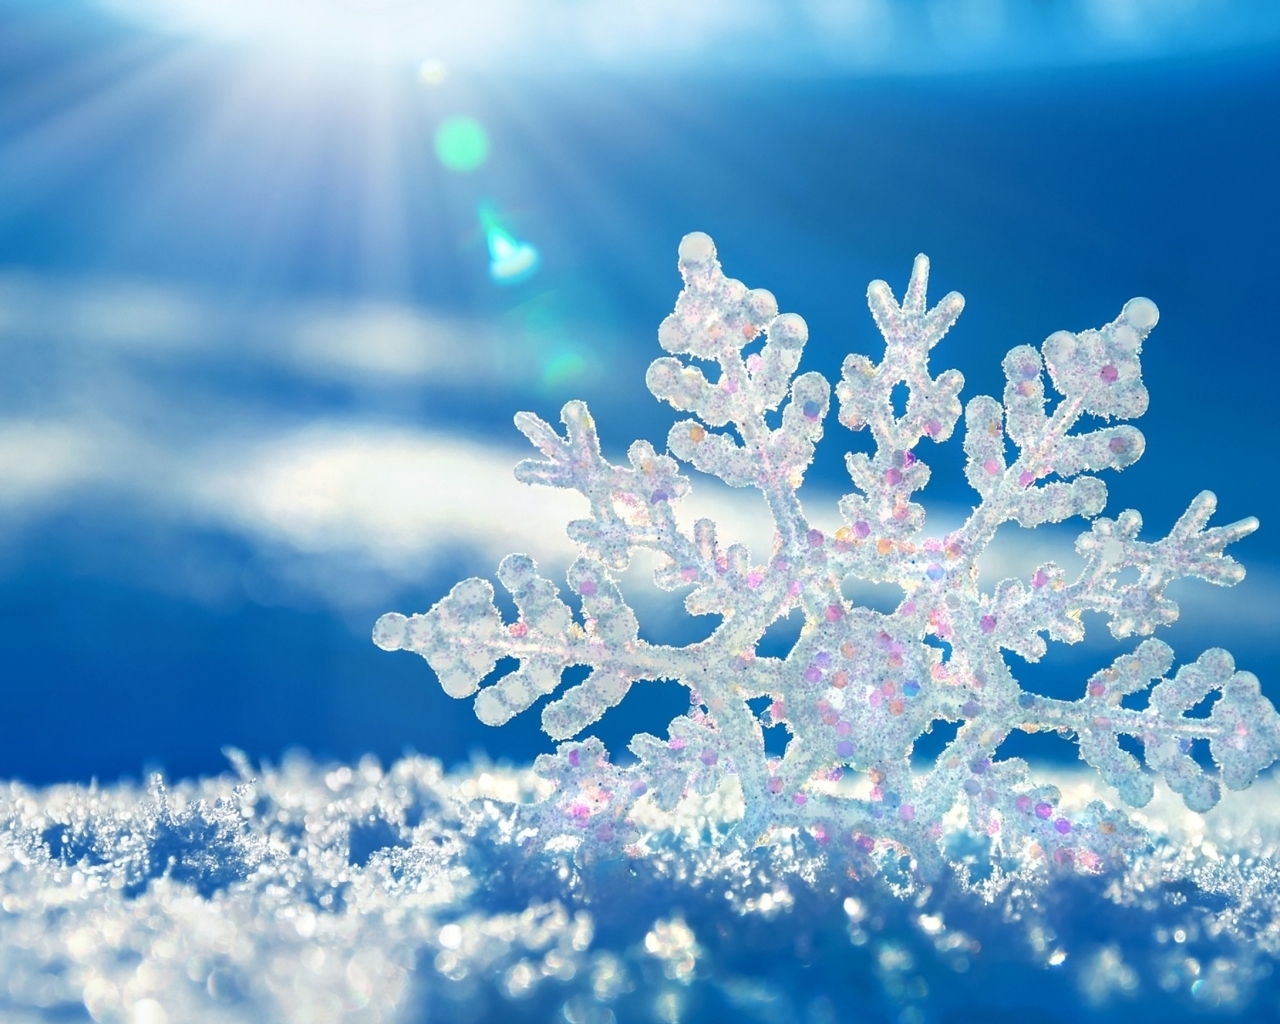 Картинка: Снежинка, снег, лучи, зима, синий фон